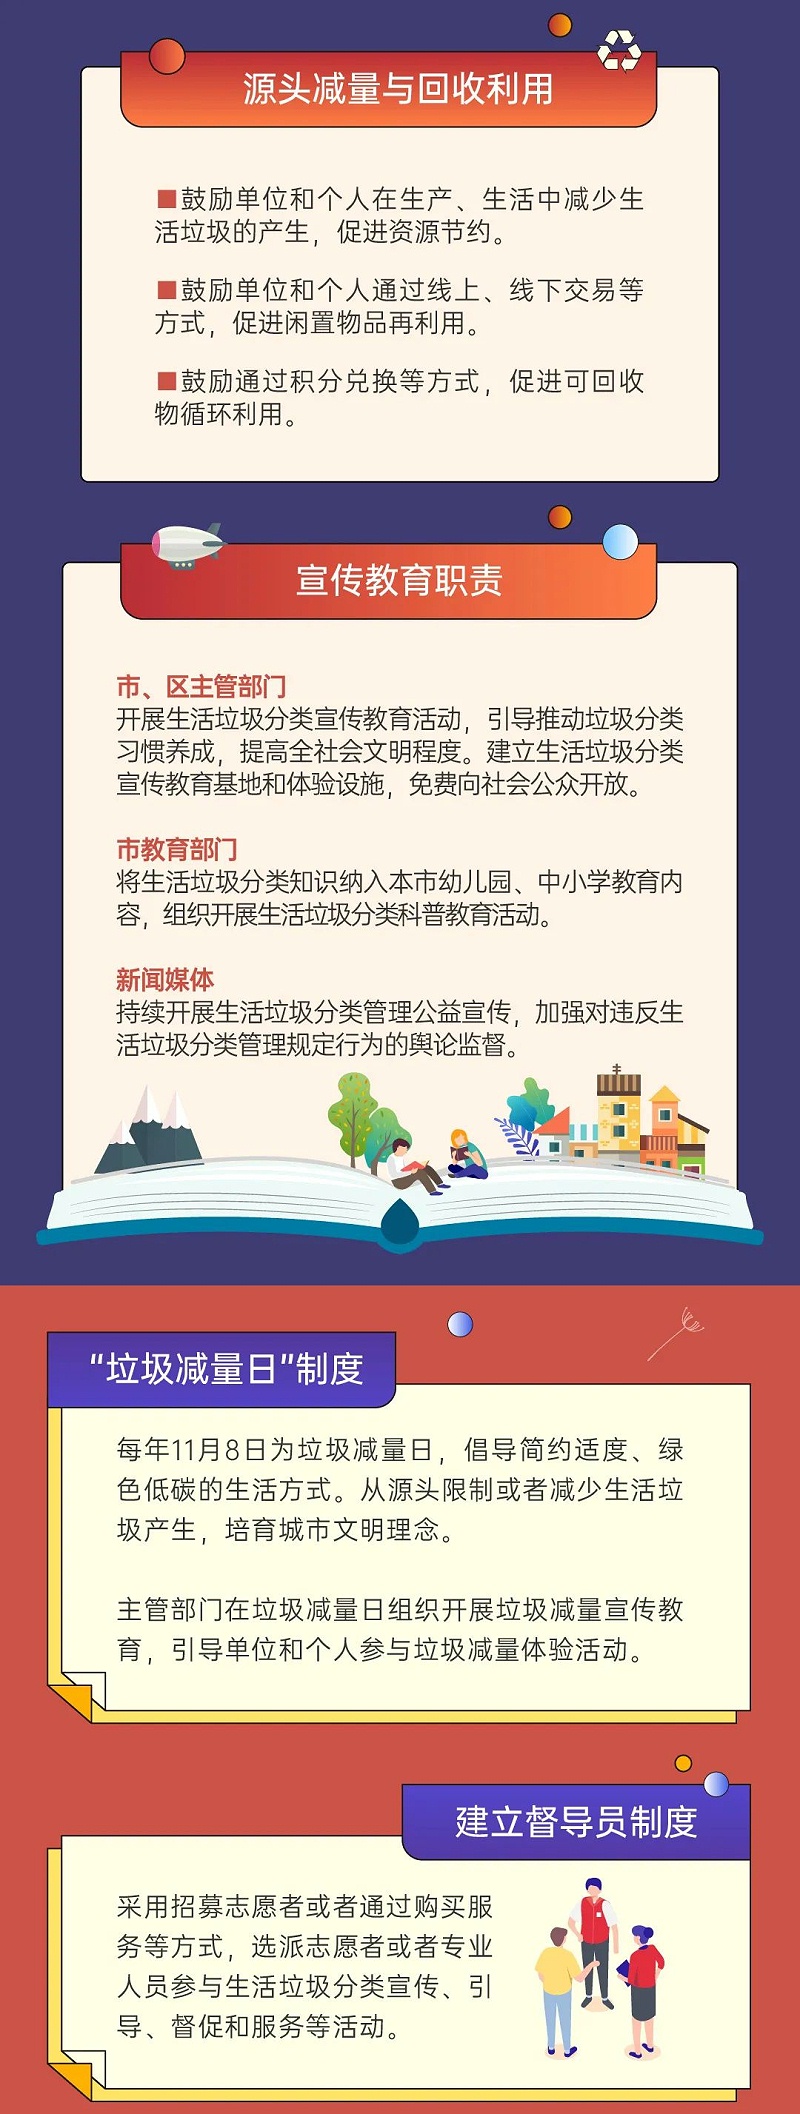 6深圳市生活垃圾分类管理条例正式实施-玉龙环保